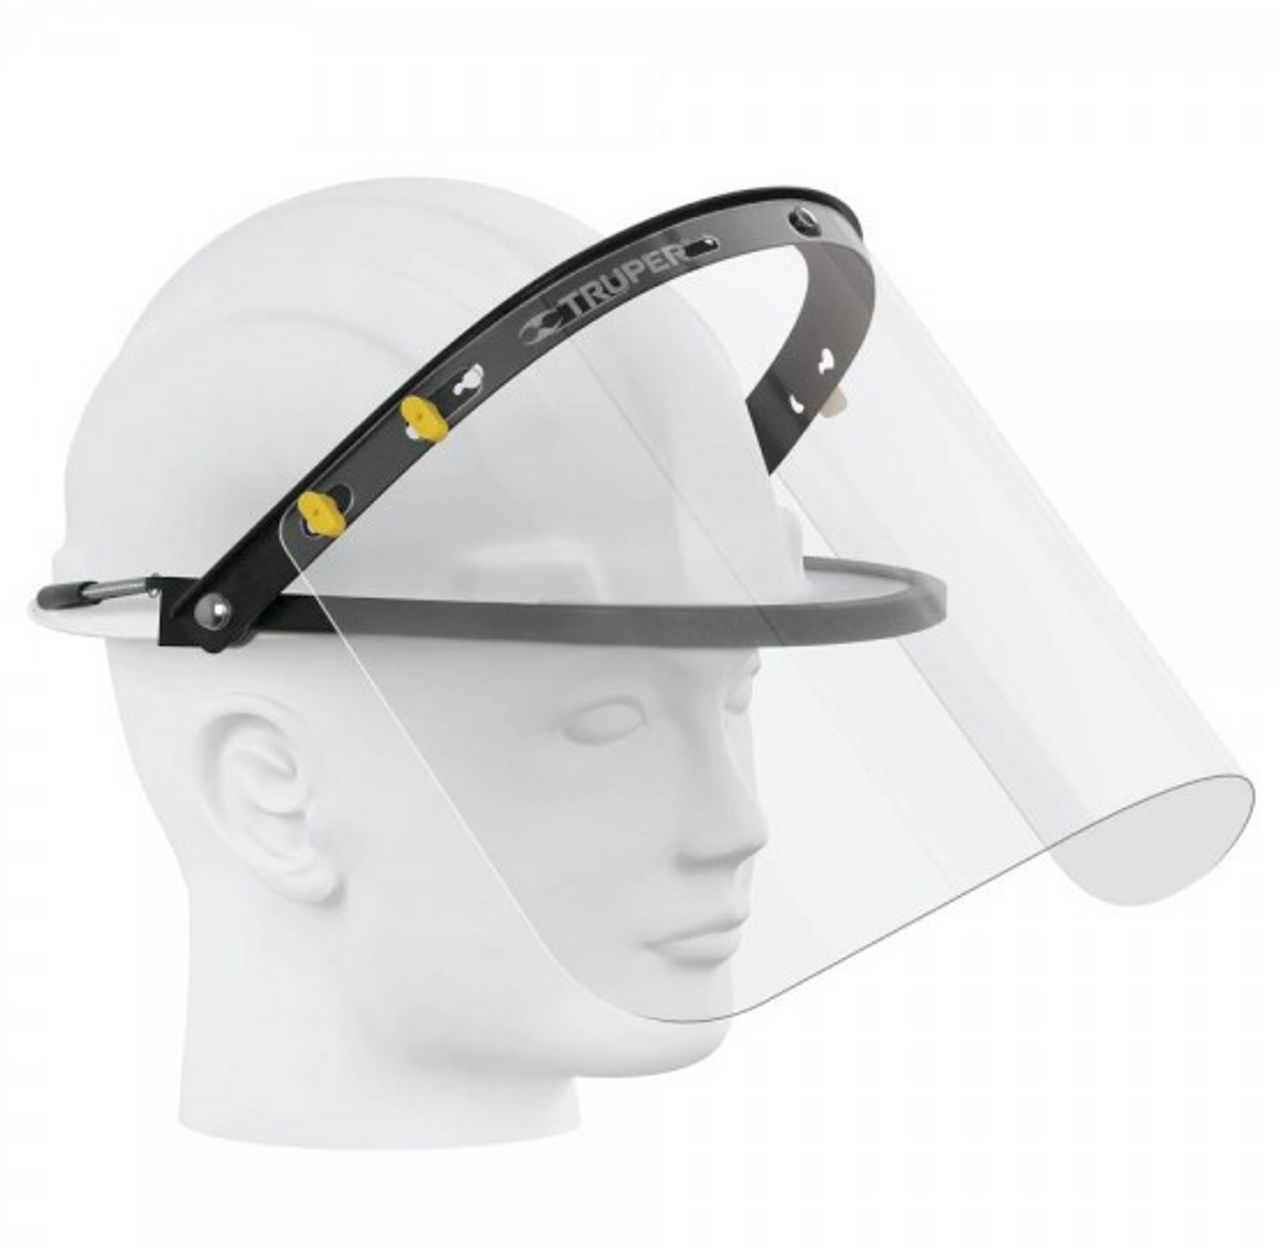 Truper Face shield mount bracket for helmet-2 Pack #14318